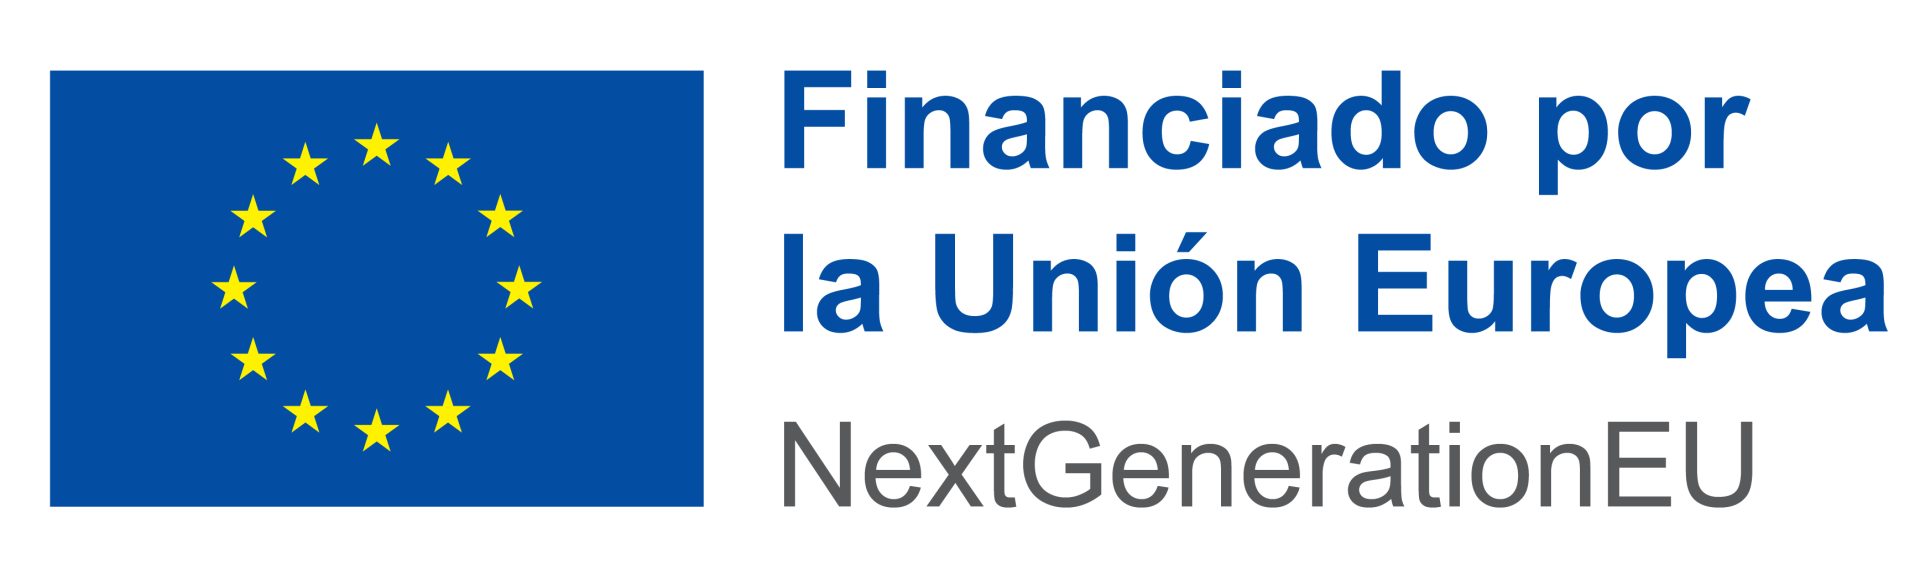 NextGenerationEU-Union-Europea